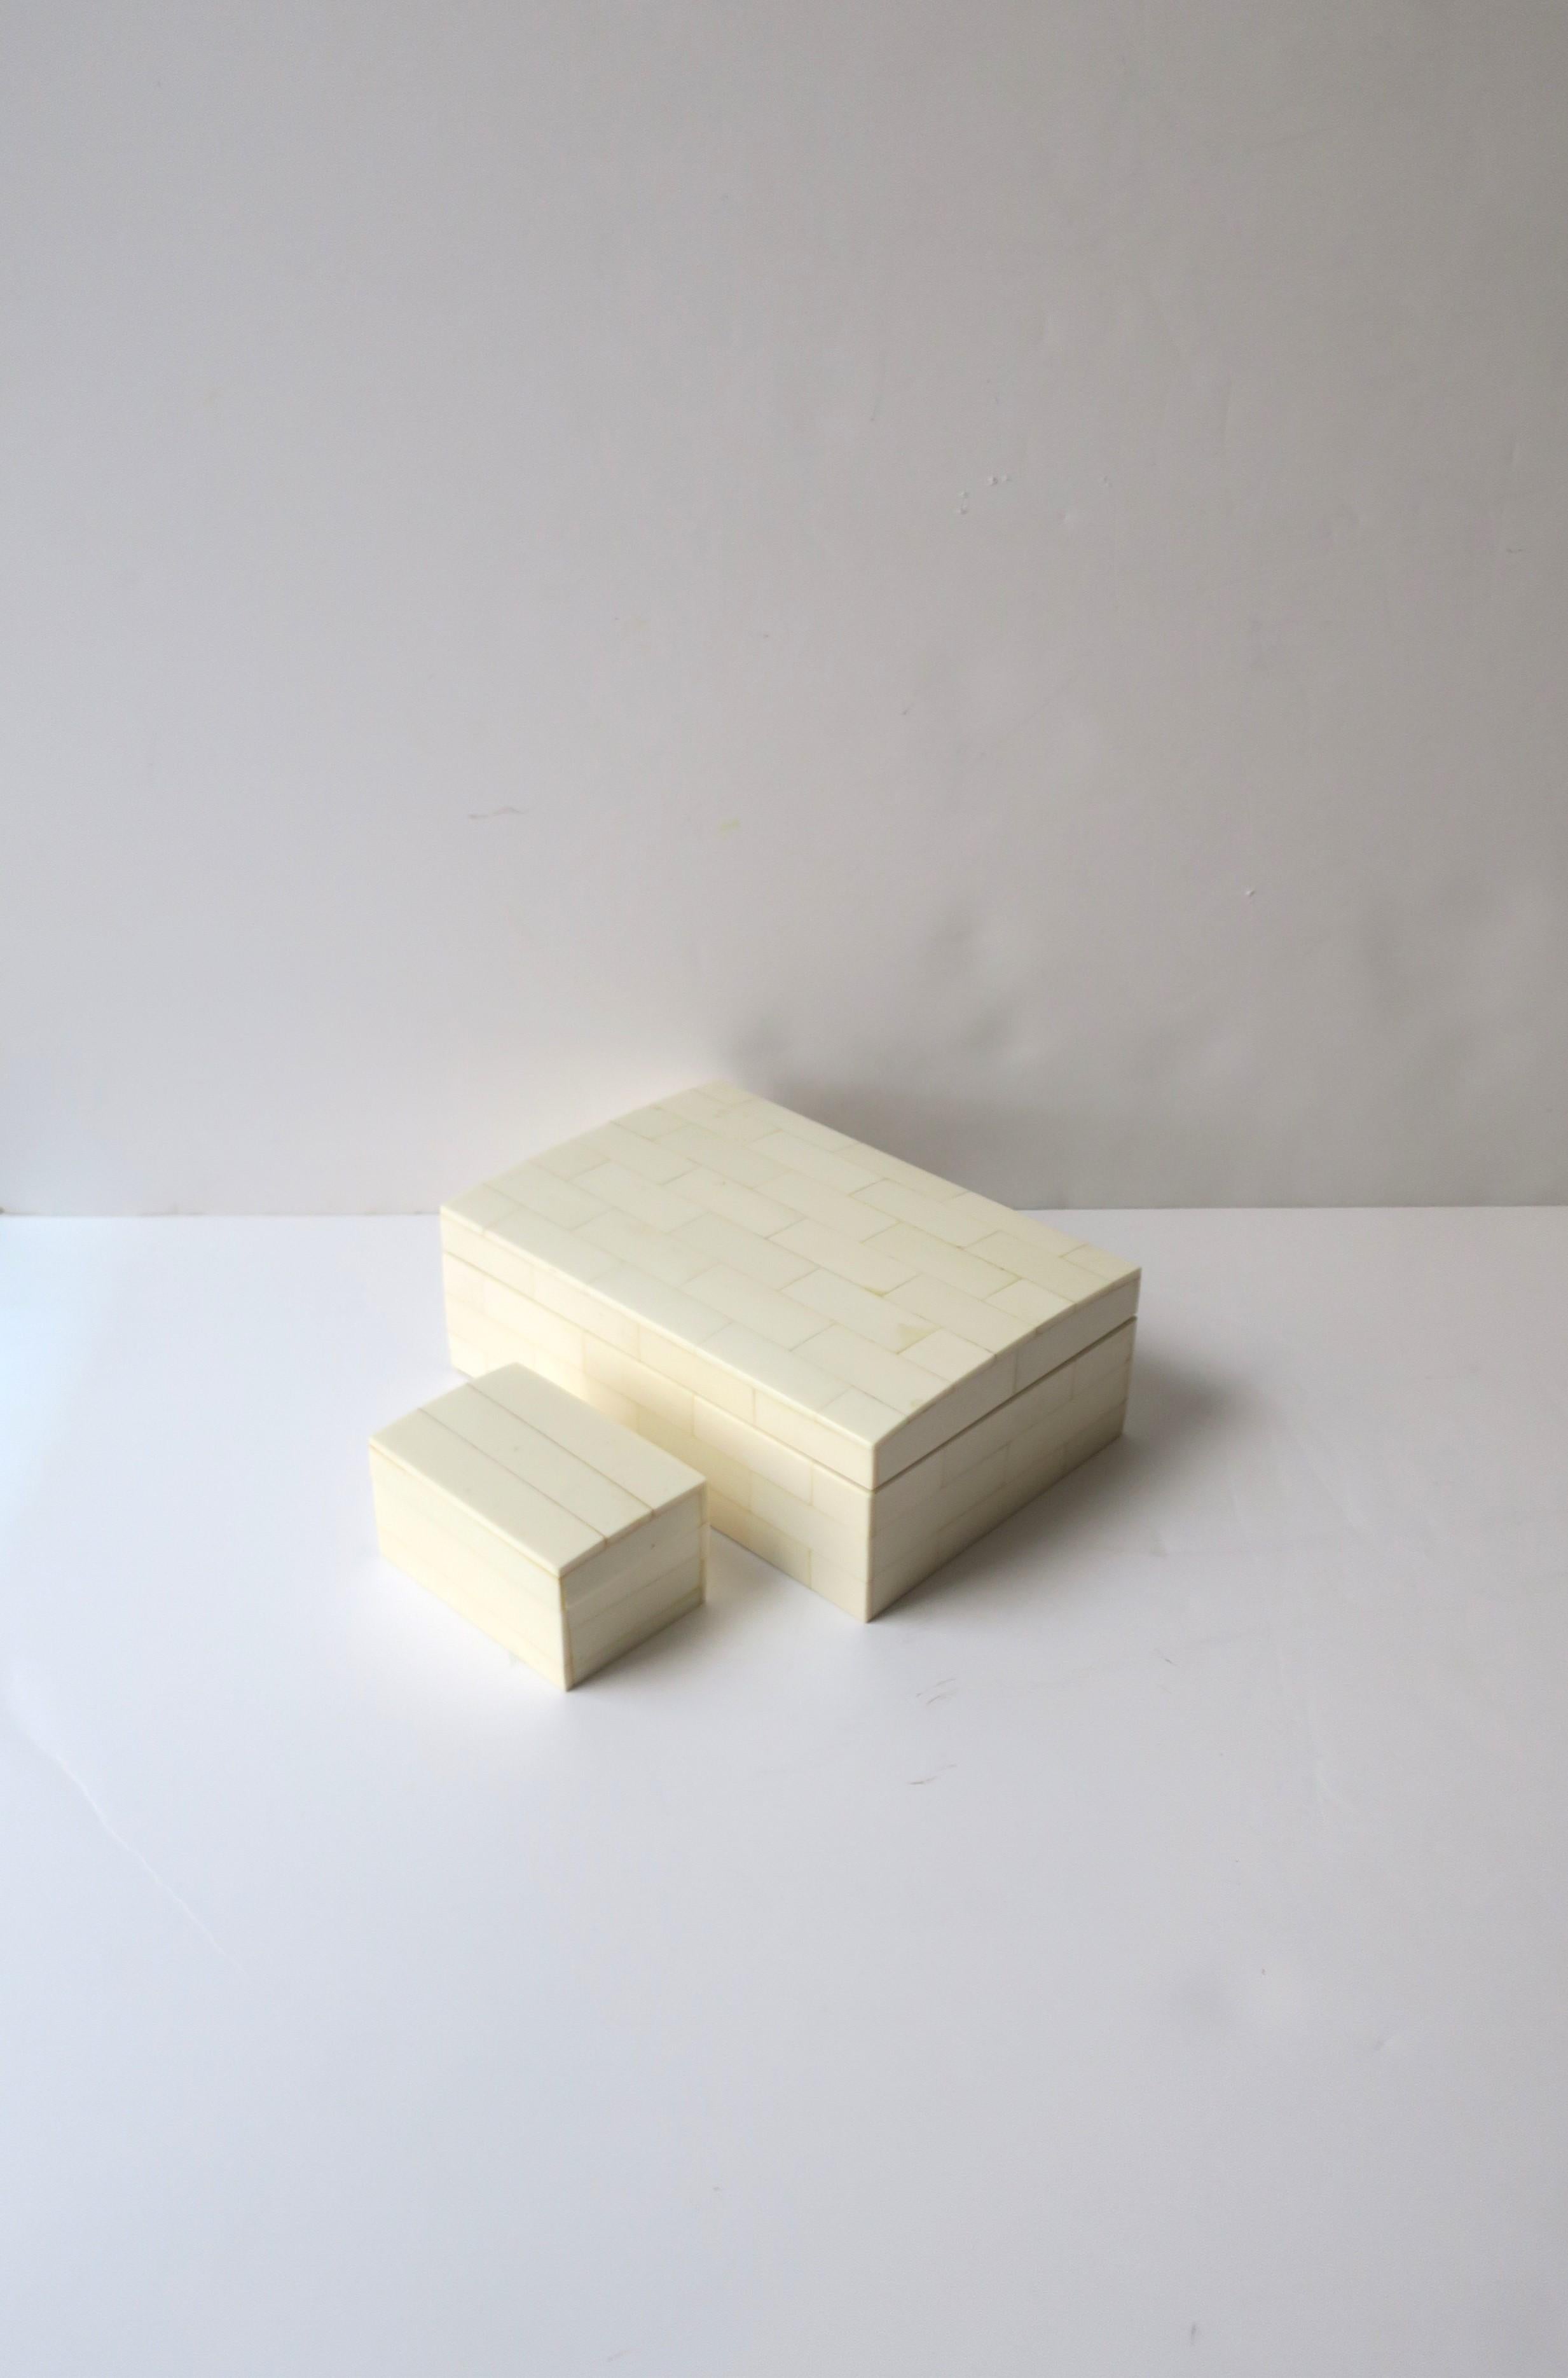 Ein Satz von zwei (2) weiß/cremefarbenen Harzlaminaten über Holz-Schmuck- oder Aufbewahrungsboxen. Ein passendes/koordinierendes Set von Boxen zur Aufbewahrung von Schmuck (wie gezeigt) oder anderen kleinen Gegenständen auf dem Schreibtisch, der